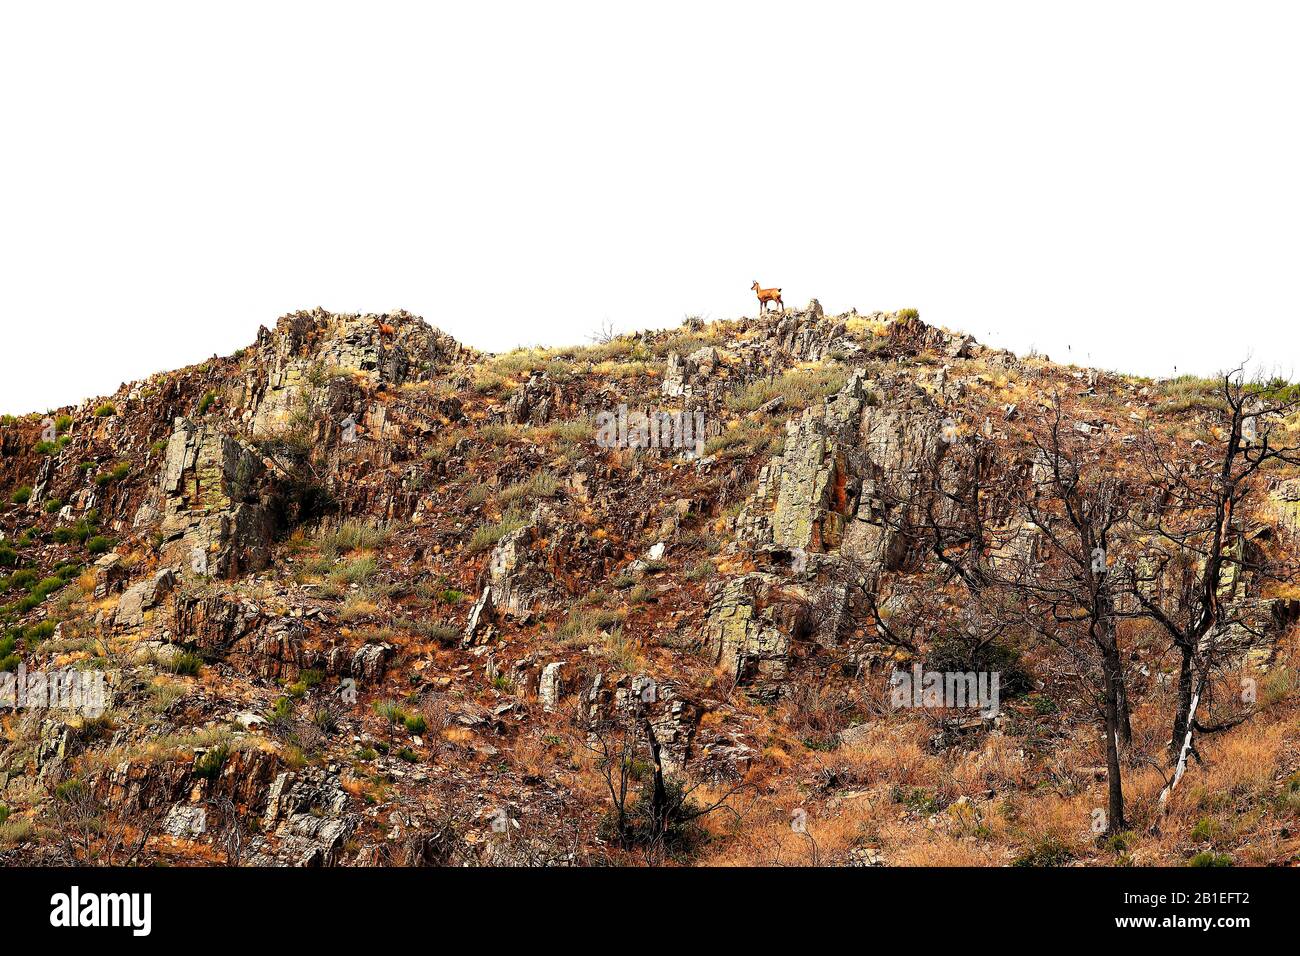 Hintergrundbild eines Chamois (Rupicapra pyrenaica) in einem asturischen Gebirge im Herbst, oktober, Gipfel Europas, Cangas de Narcea, Gijon, Spanien Stockfoto